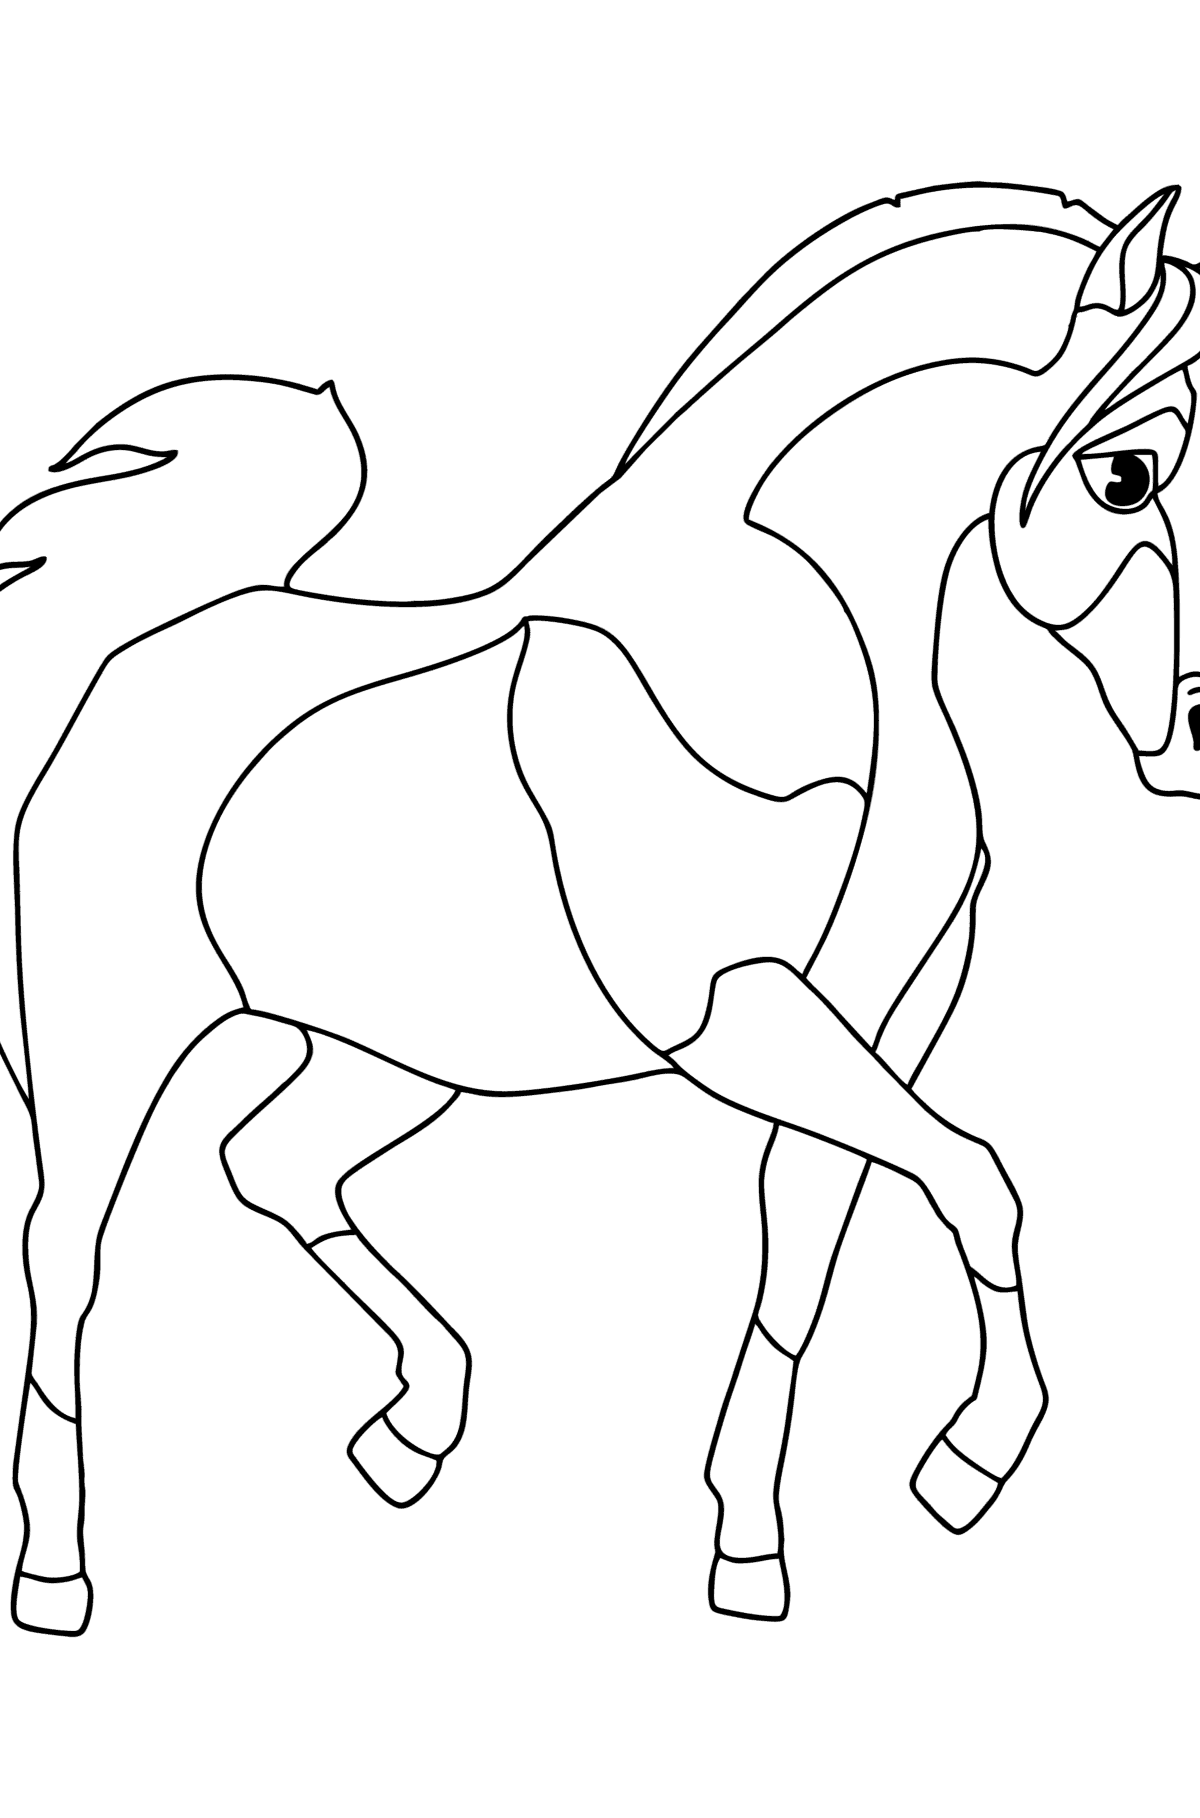 Раскраска арабская лошадь - Картинки для Детей